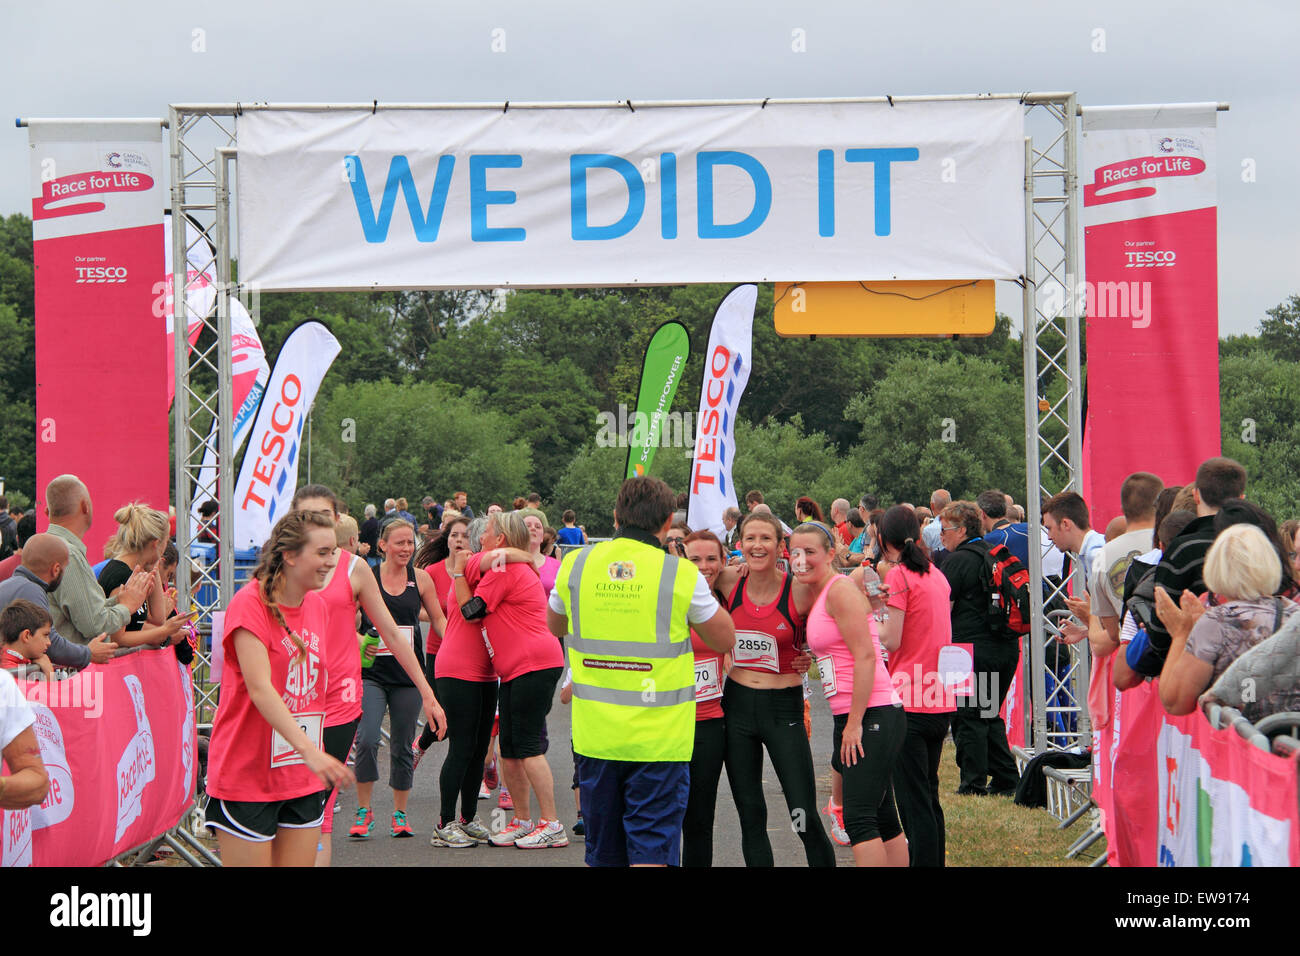 Ziellinie am "Race for LIfe" nur für Frauen Spendenaktionen Laufveranstaltung für Cancer Research UK. 20. Juni 2015. Kempton Park Rennbahn, Staines Road East, Sunbury am Thames, Middlesex, England, Großbritannien, Deutschland, UK, Europa. Bildnachweis: Ian Bottle / Alamy Live News Stockfoto